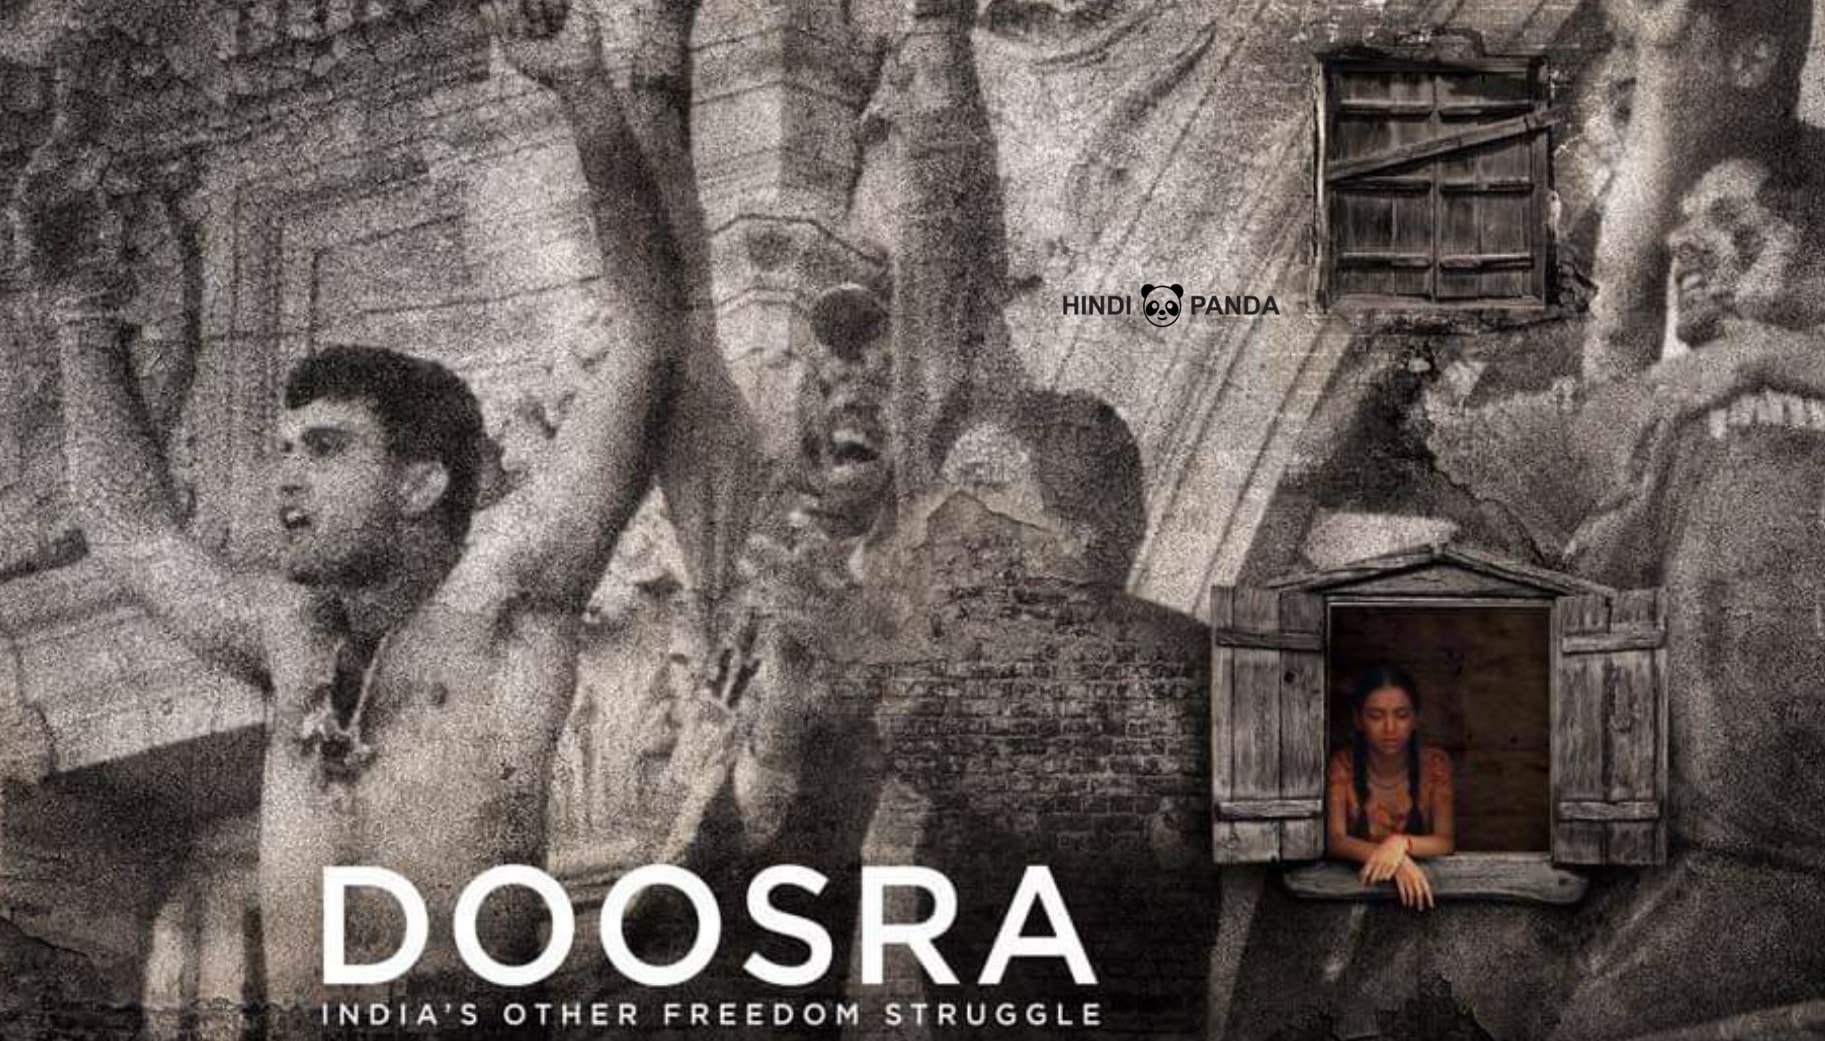 Doosra Movie 2019 Trailer